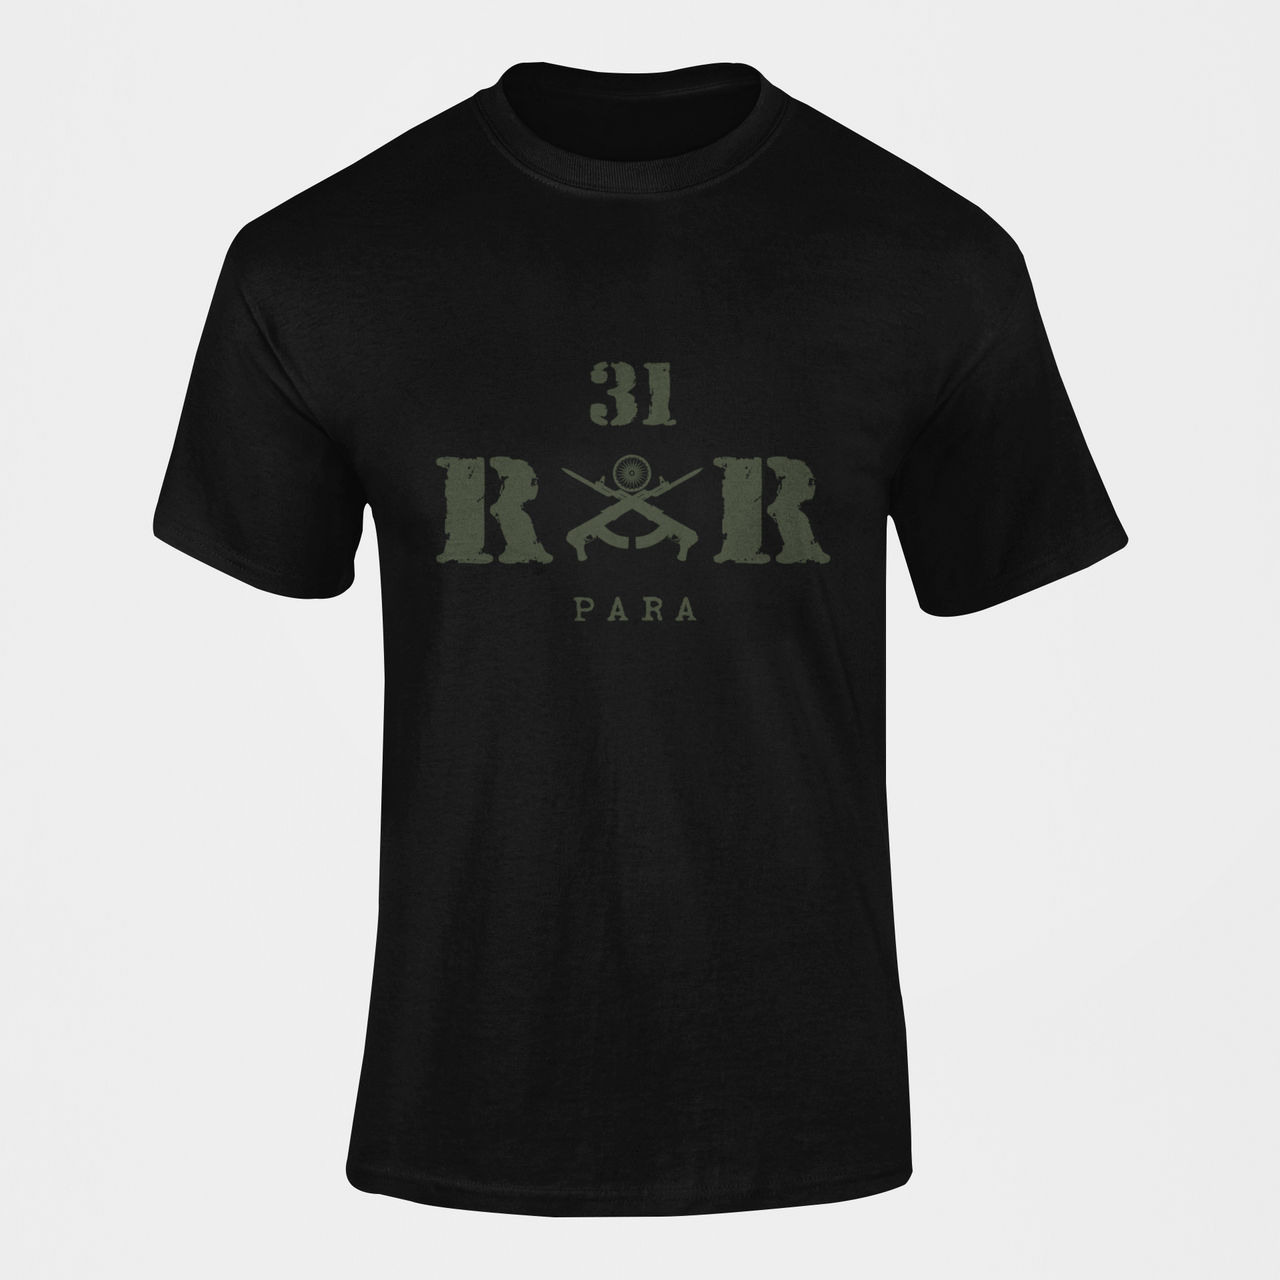 Rashtriya Rifles T-shirt - 31 RR (Men)